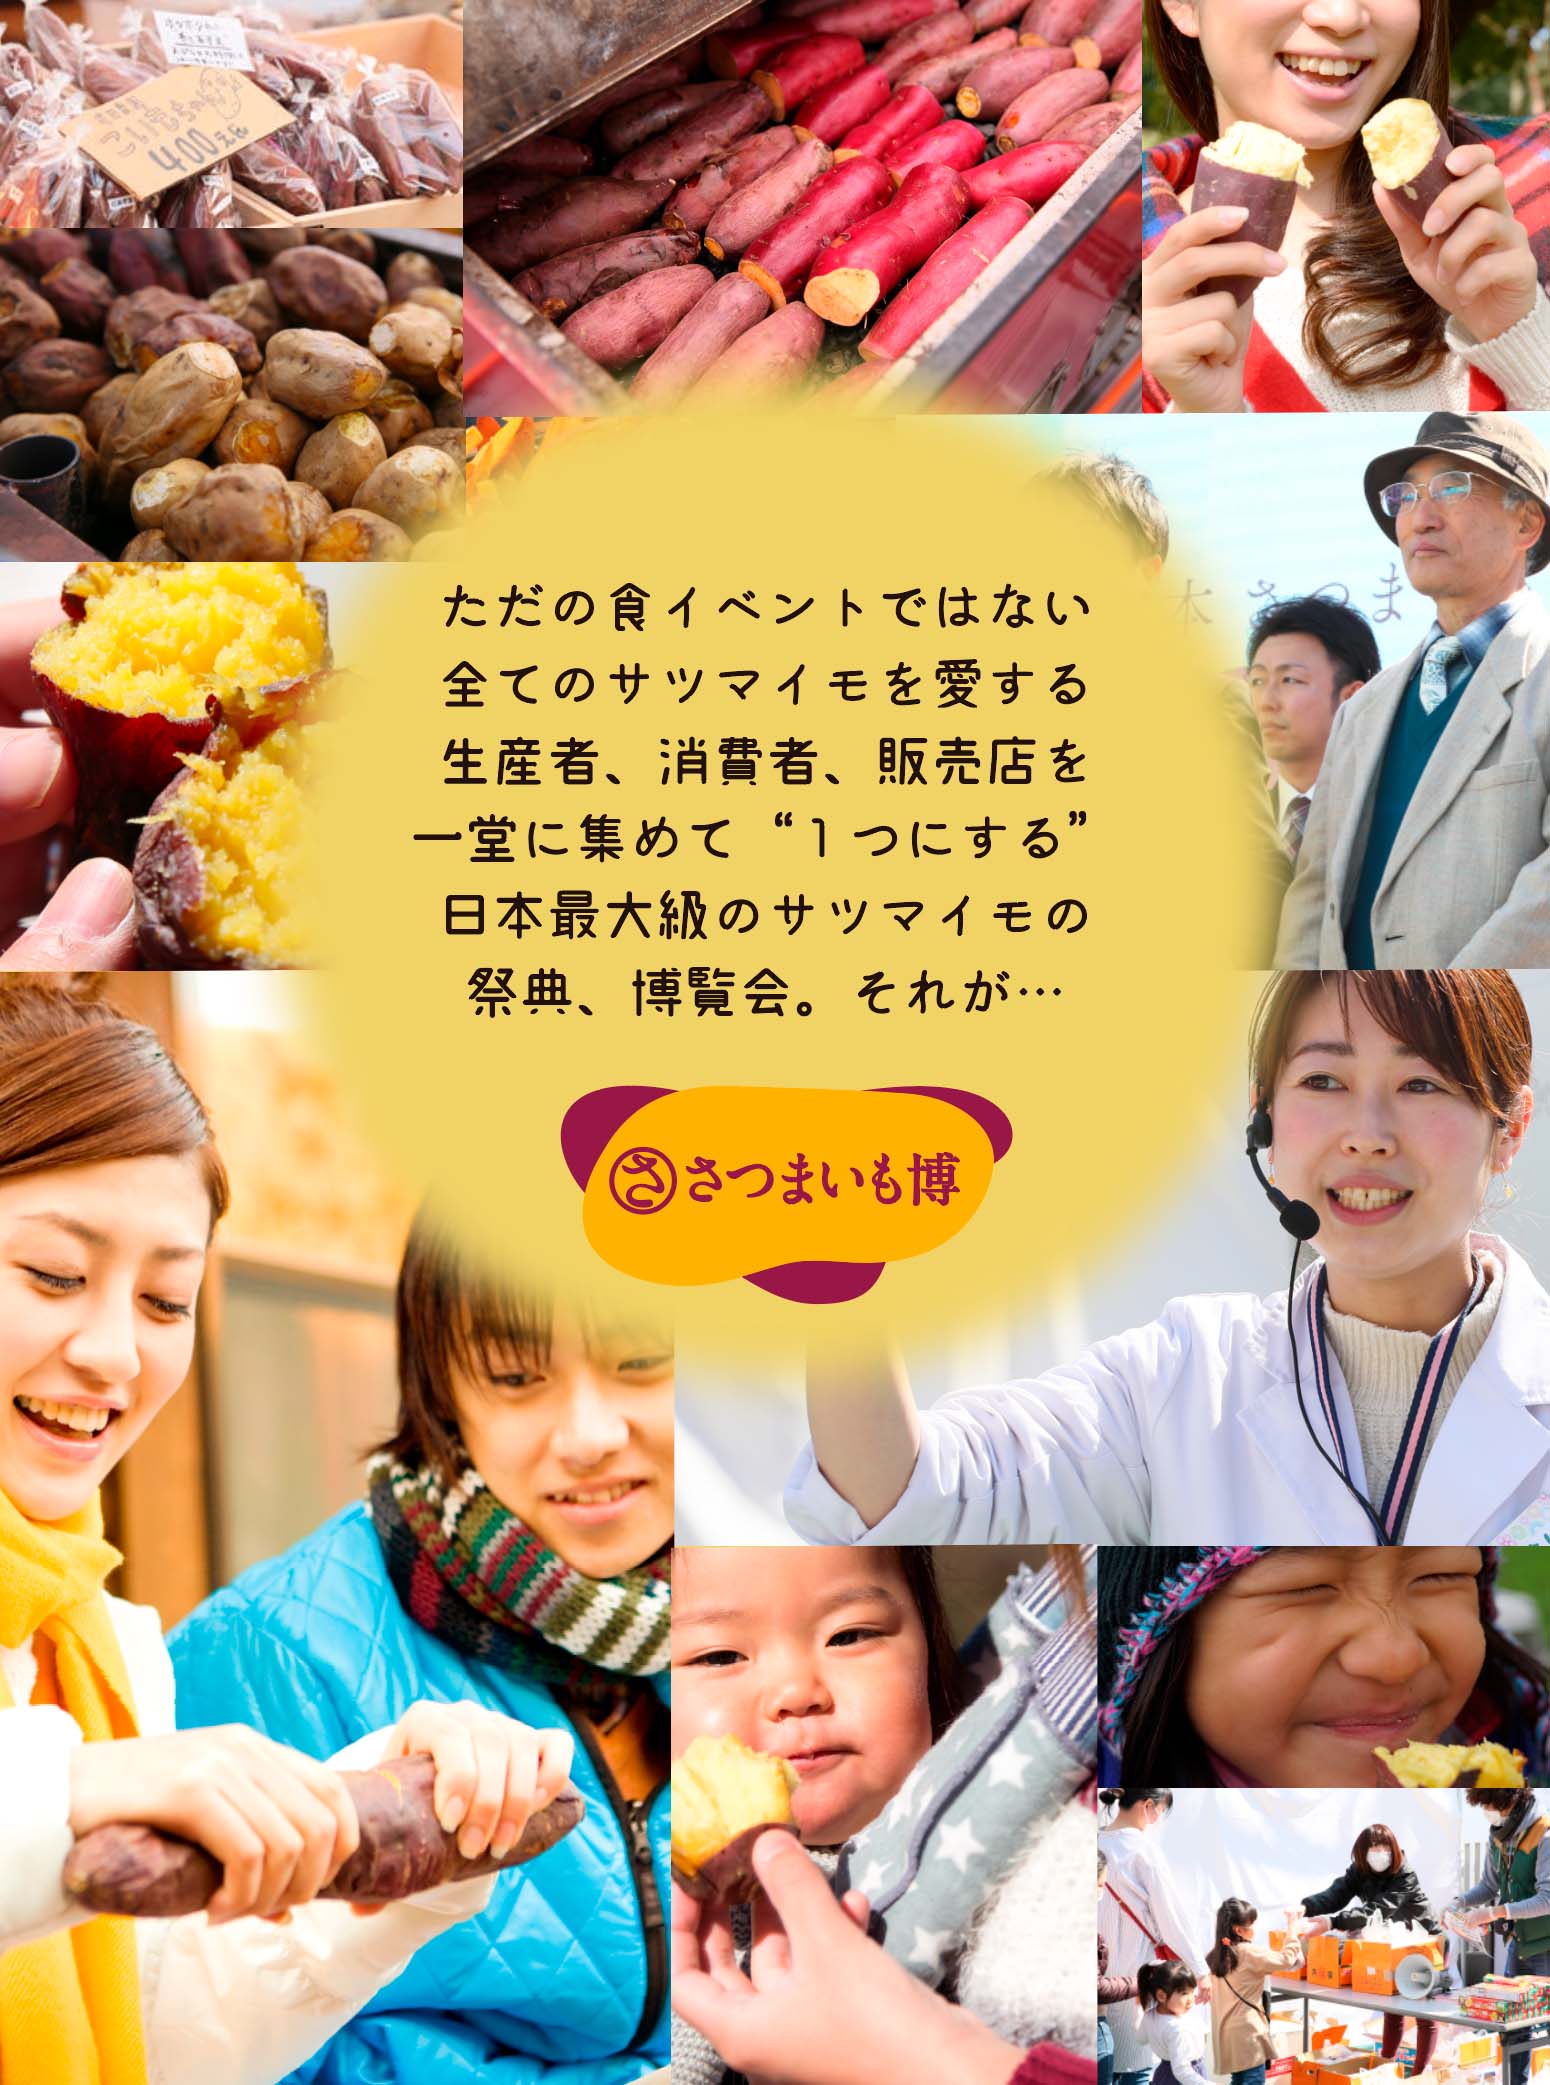 ただの食イベントではない全てのサツマイモを愛する生産者、消費者、販売店を一堂に集めて“１つにする”日本最大級のサツマイモの祭典、博覧会。それが…さつまいも博